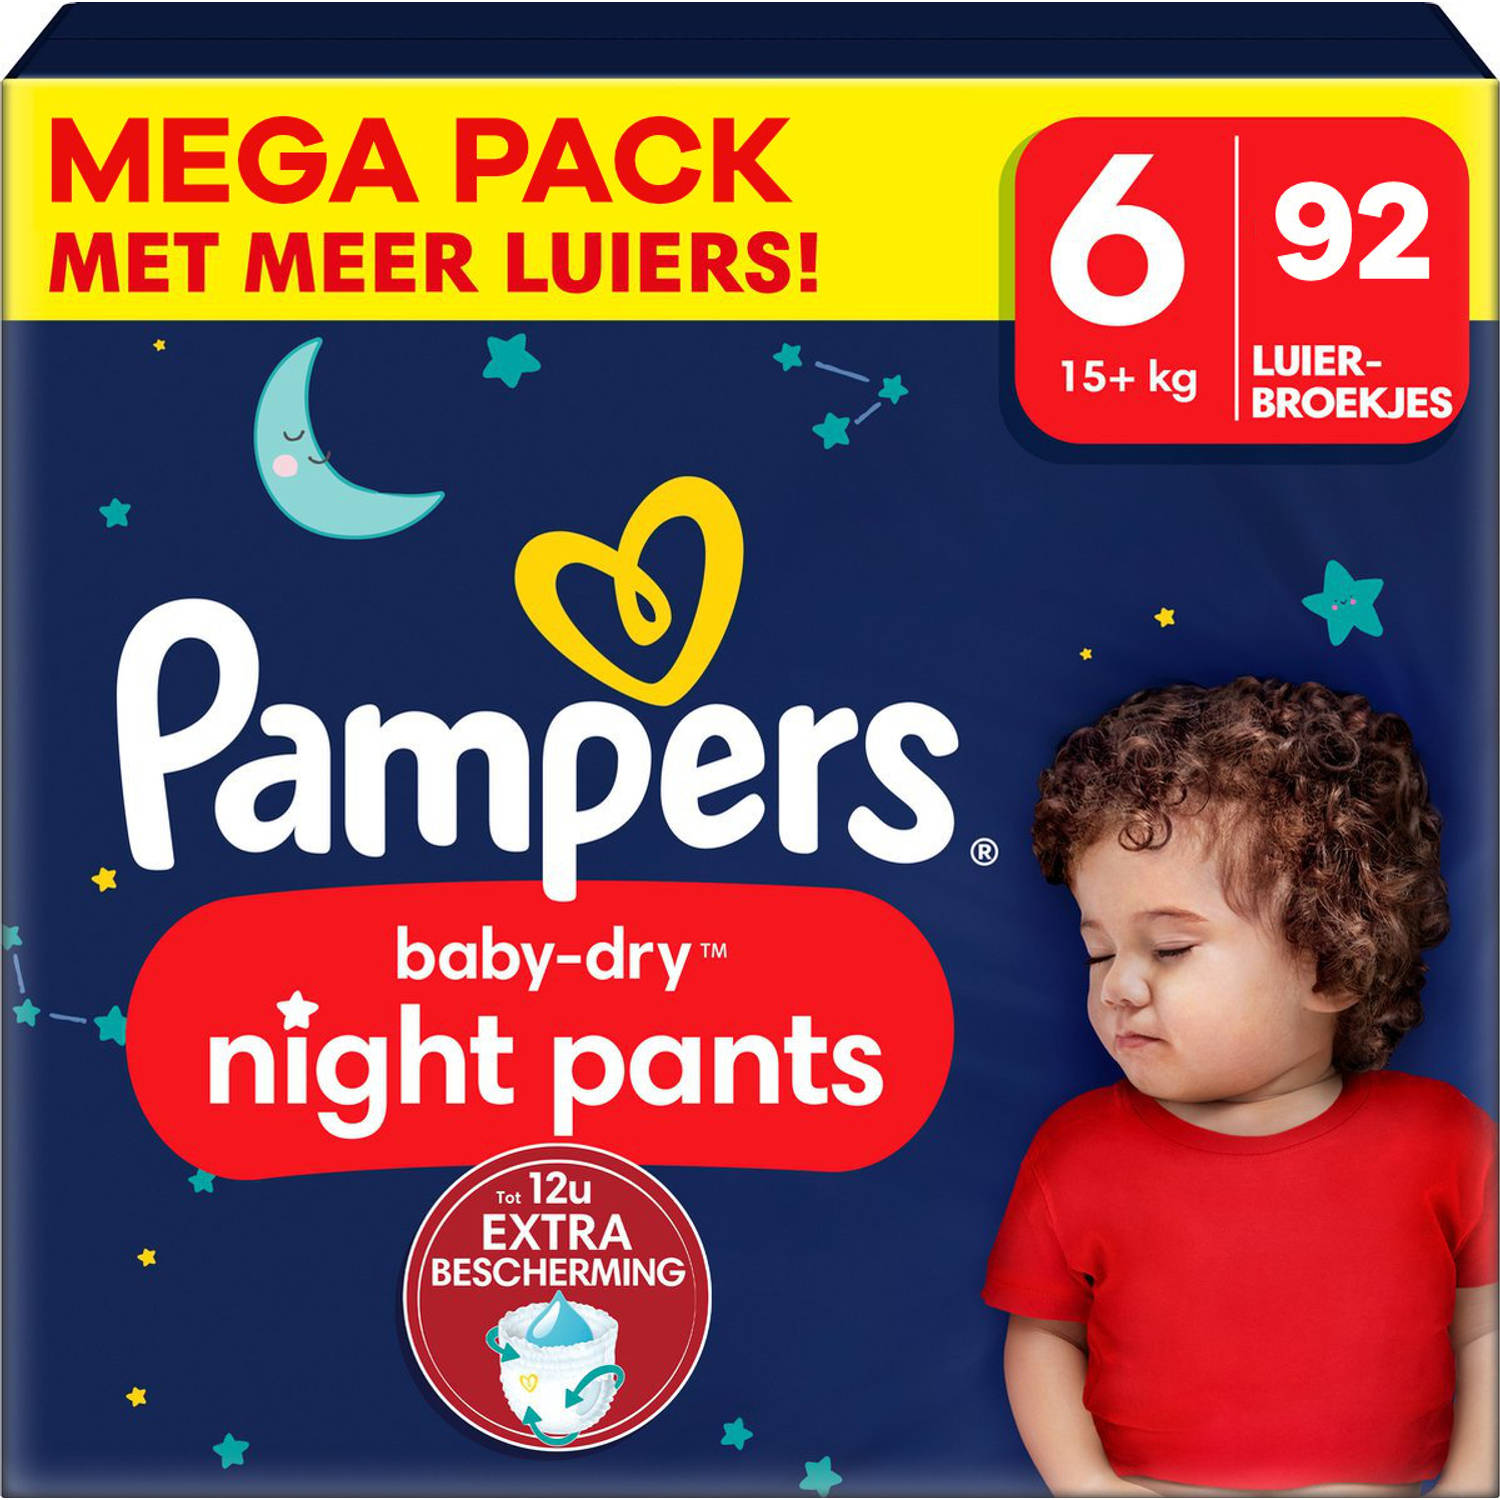 Pampers - Baby Dry Night Pants - Maat 6 - Mega Pack - 92 luierbroekjes